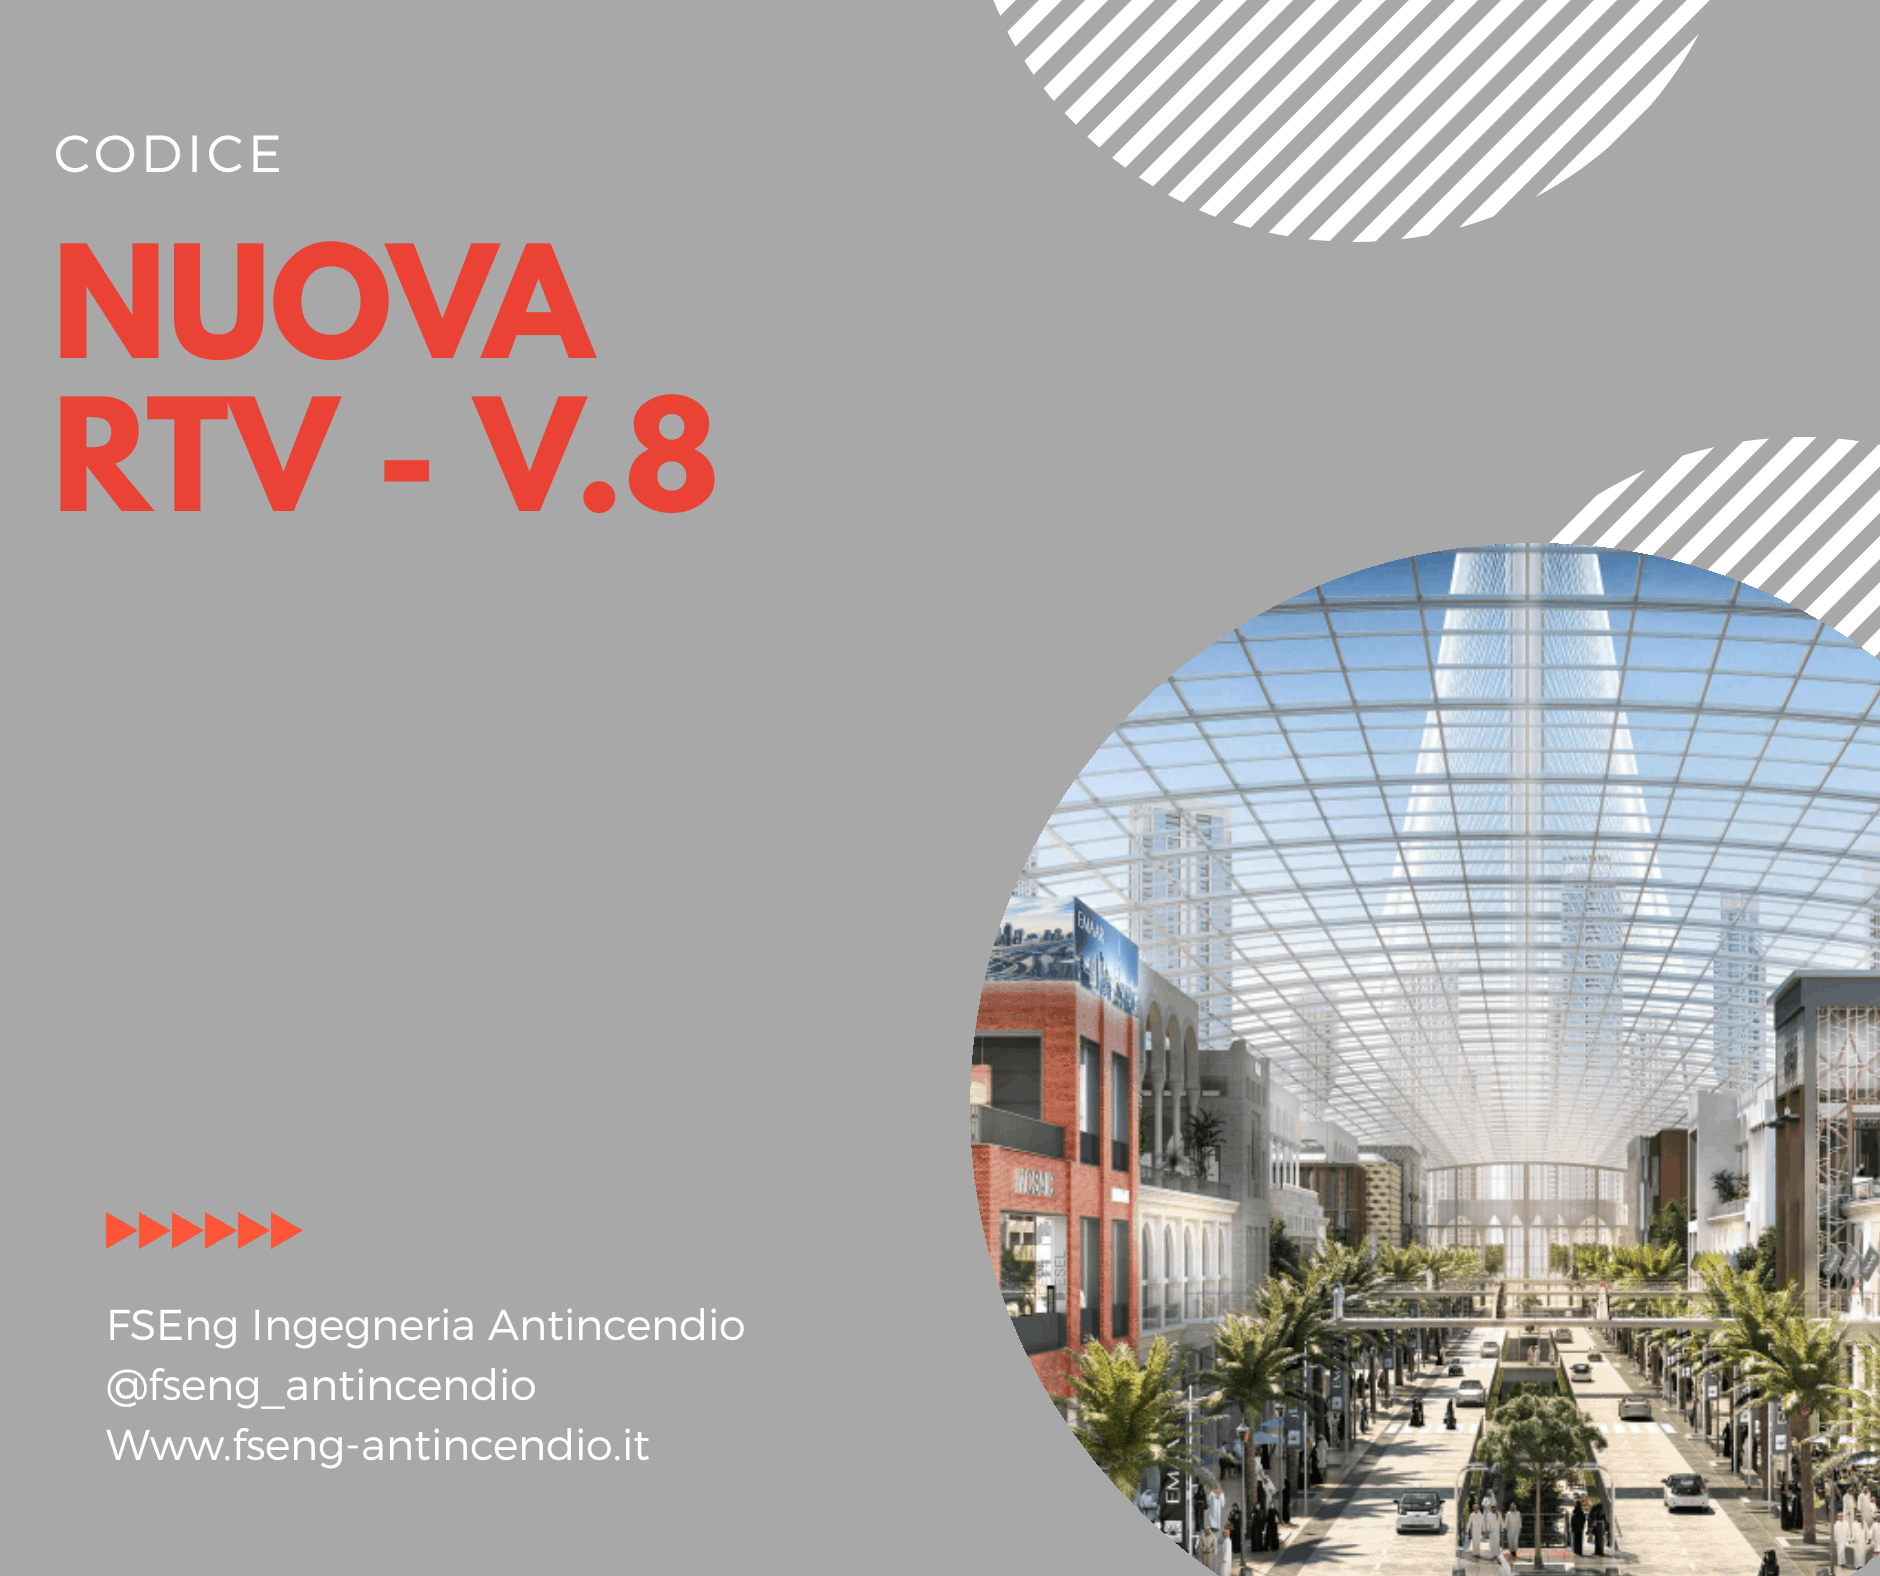 La nuova RTV Centro Commerciali - Capitolo V.8 - D.M. 14.02.2020